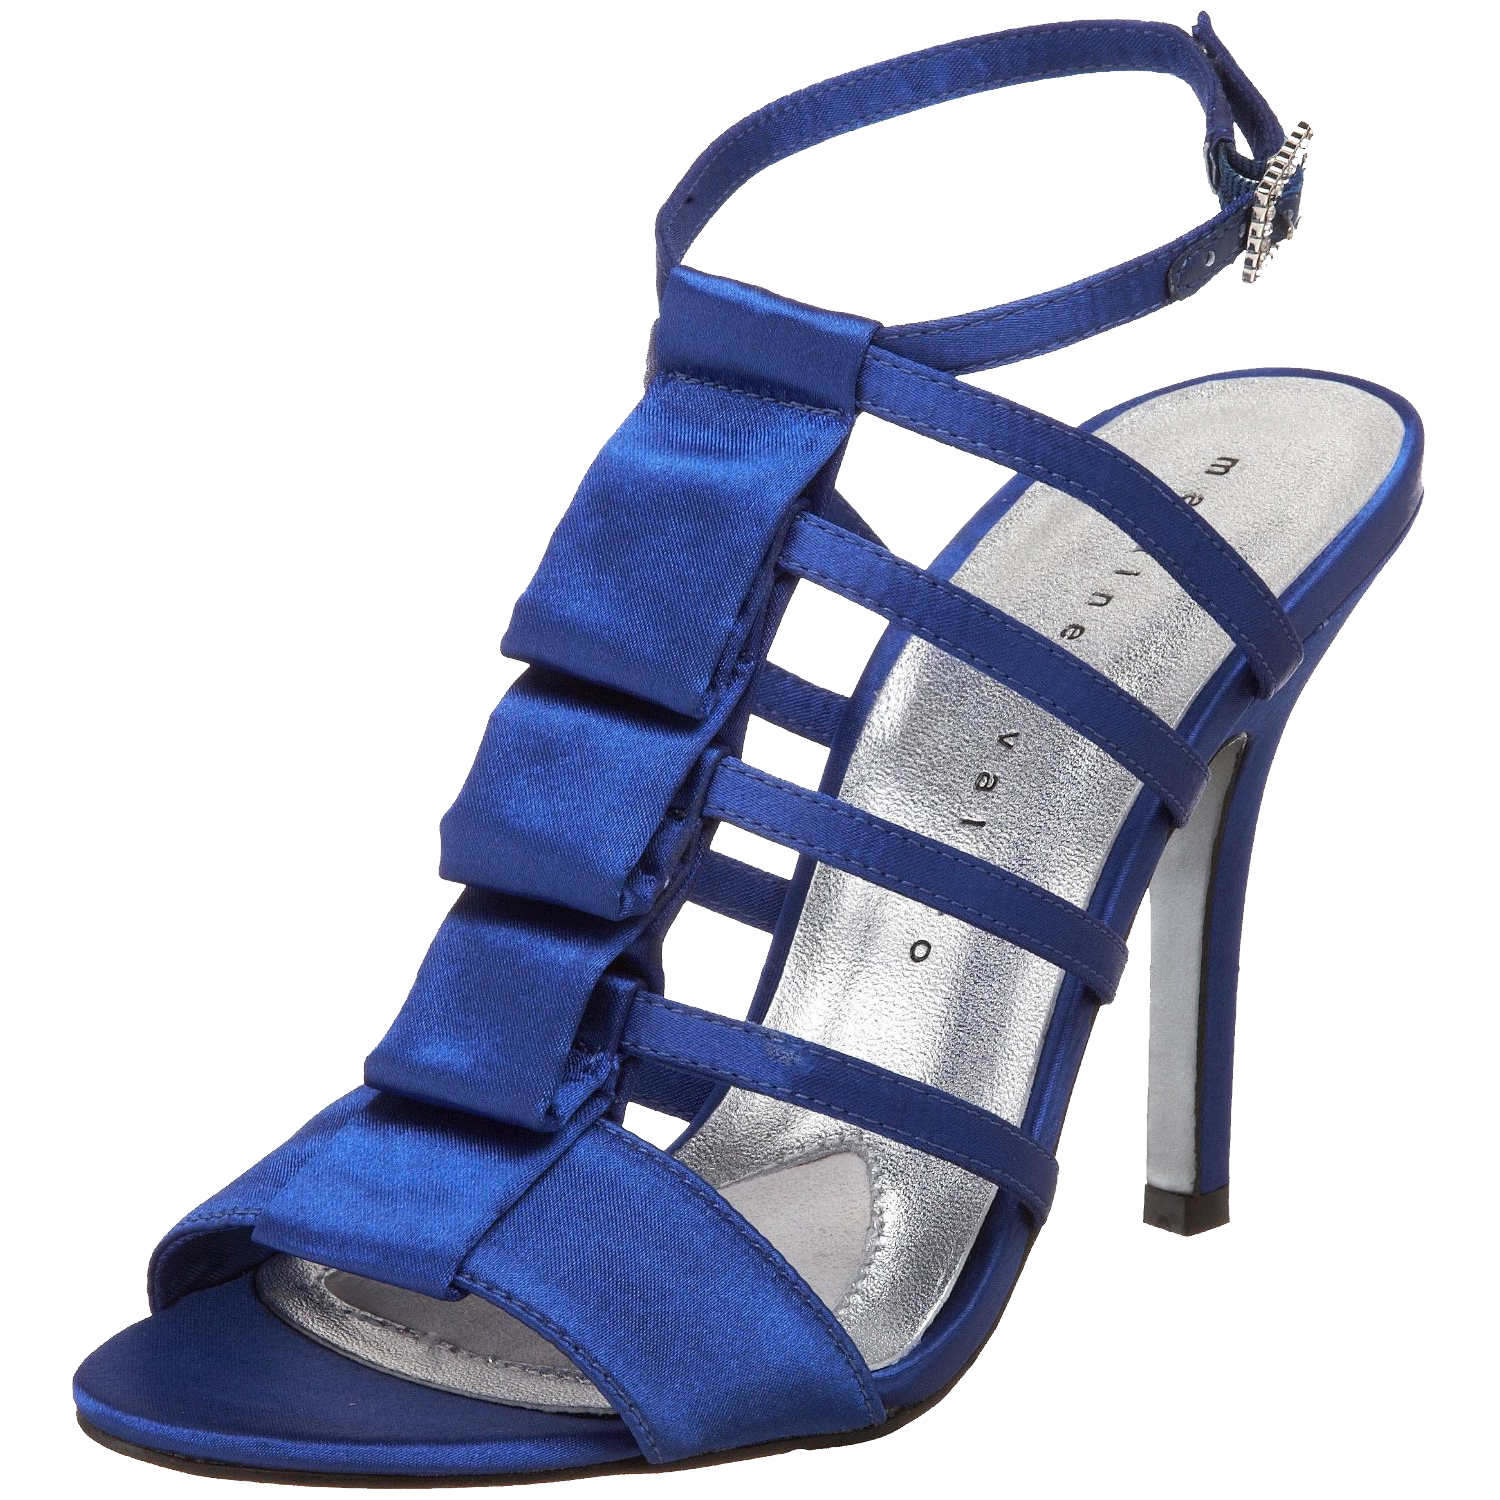 Blue Women Shoes  Transparent Image